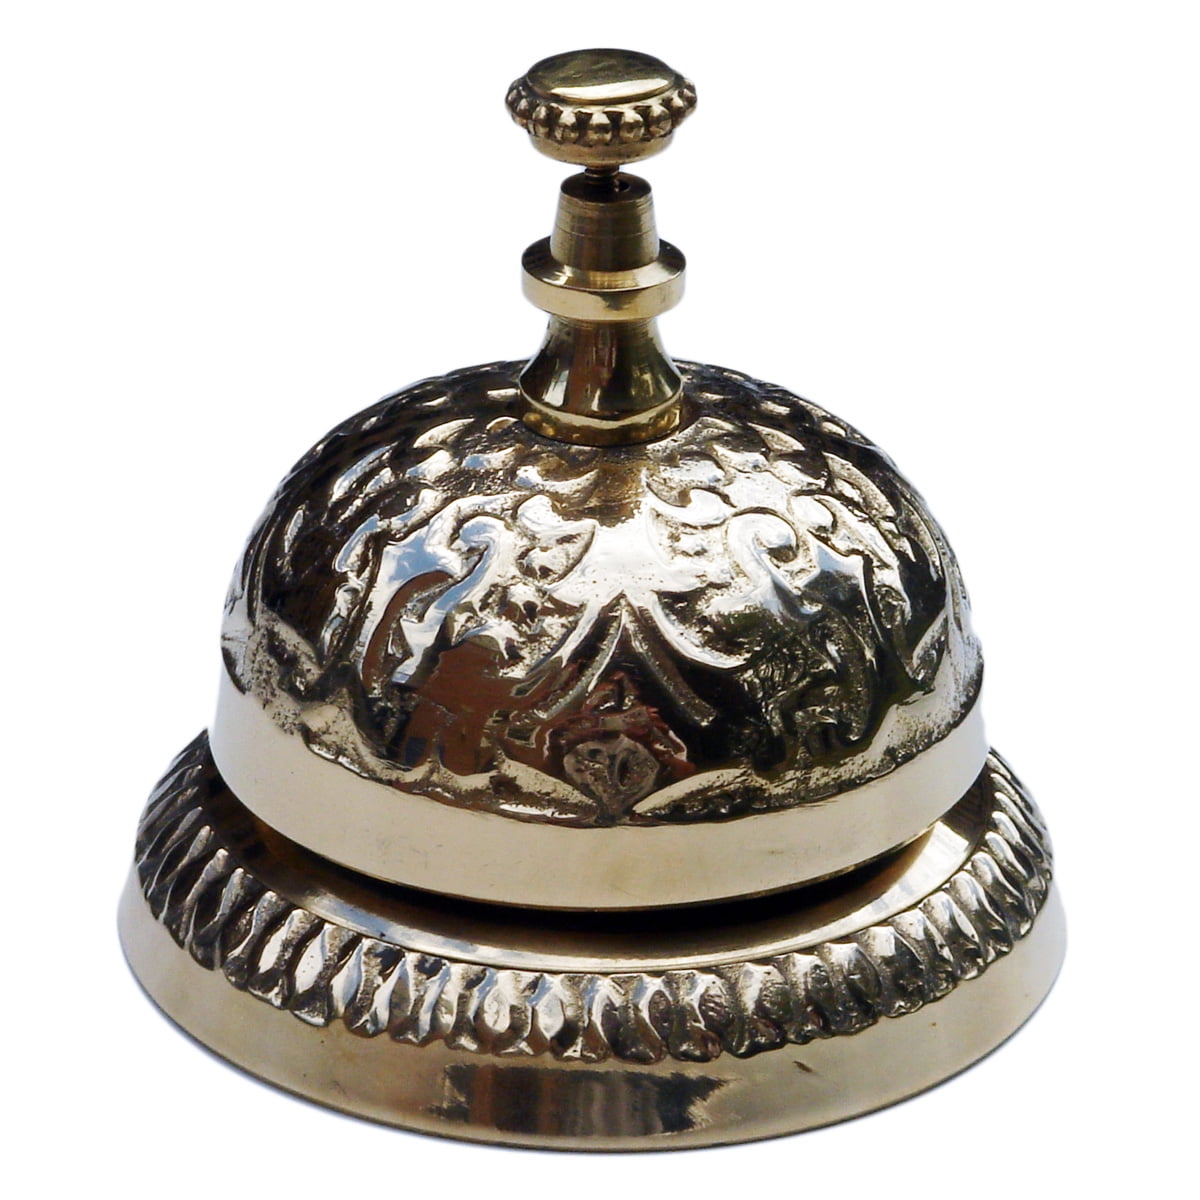 Antique Brass Ornate Hotel Front Desk Bell ~ Vintage Sale Service Counter Bell 